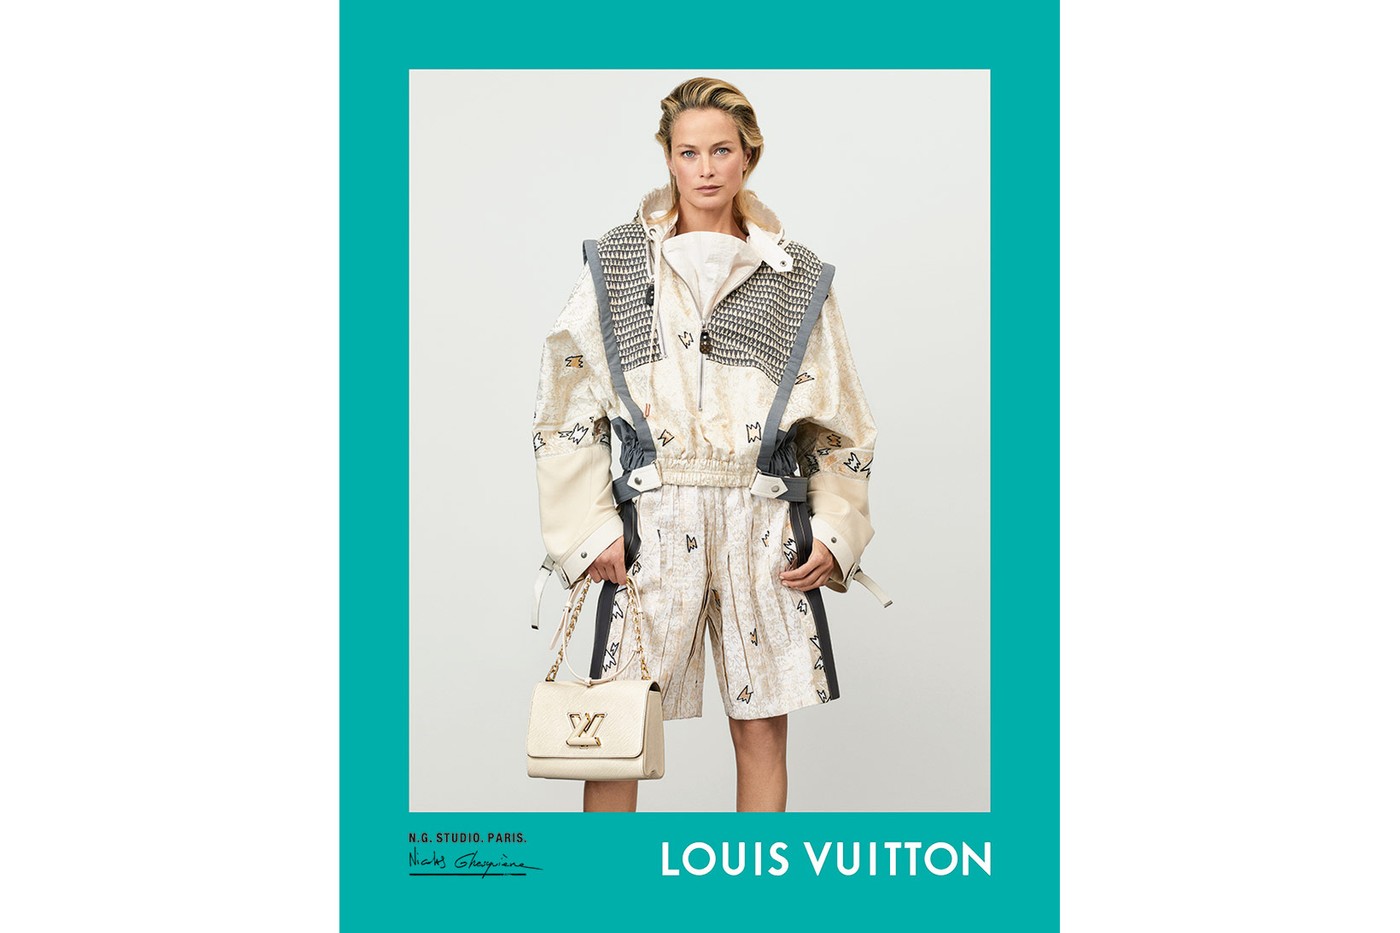 Louis Vuitton présente une nouvelle campagne Printemps Été 2021